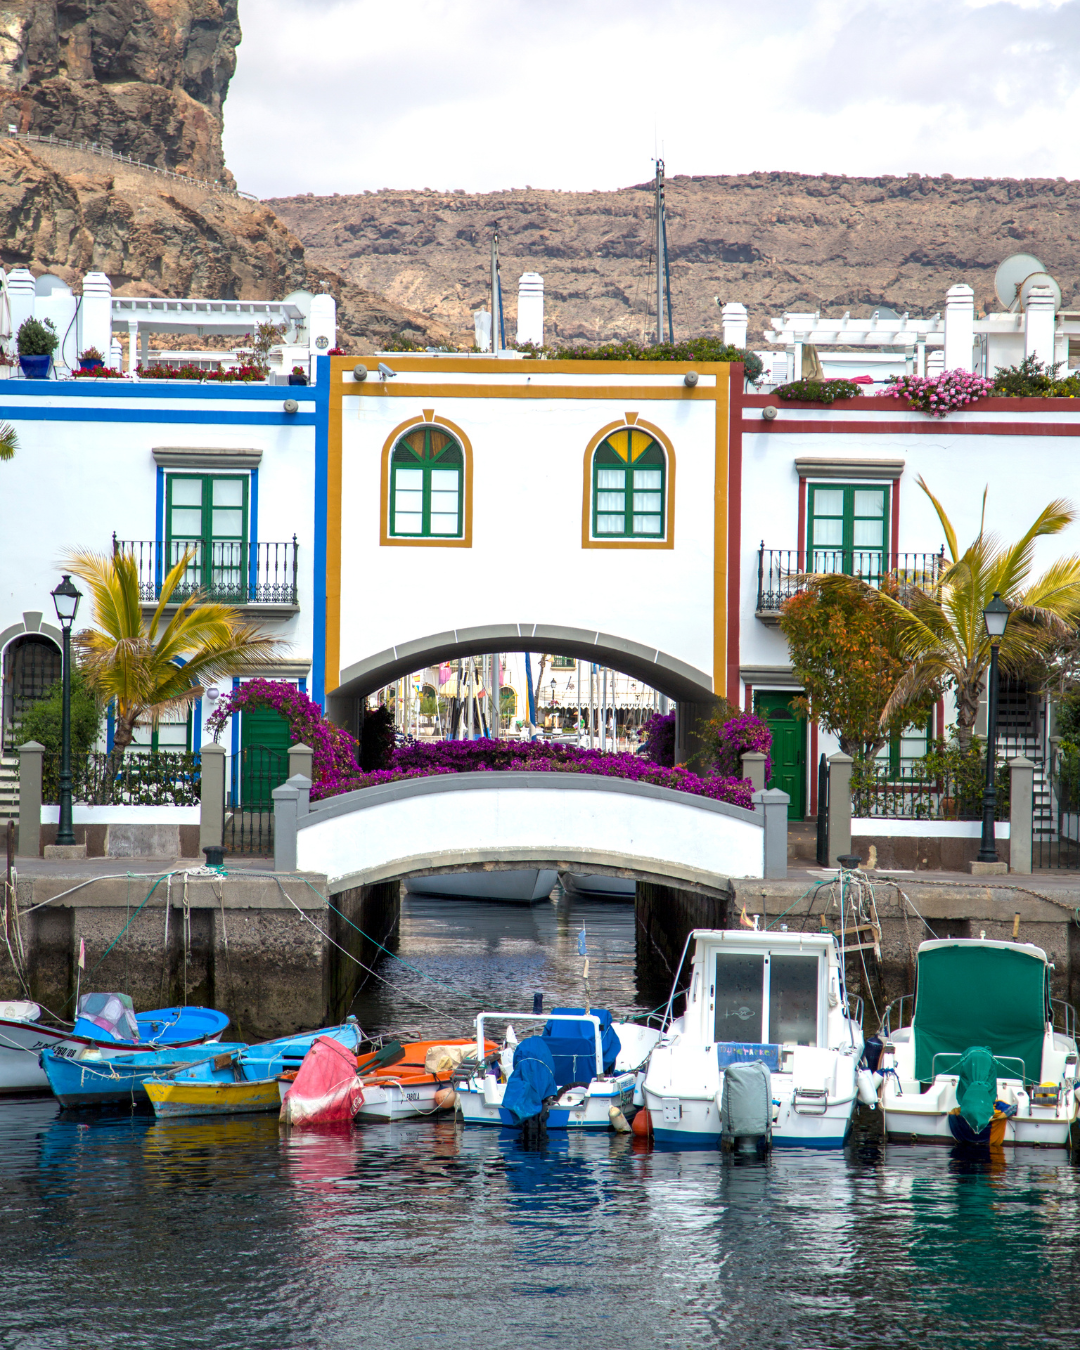 Beautiful Facade of Puerto de Mogan, Puerto de Mogán, Las Palmas, Spain - Gran Canaria Holidays Barter's Travelnet